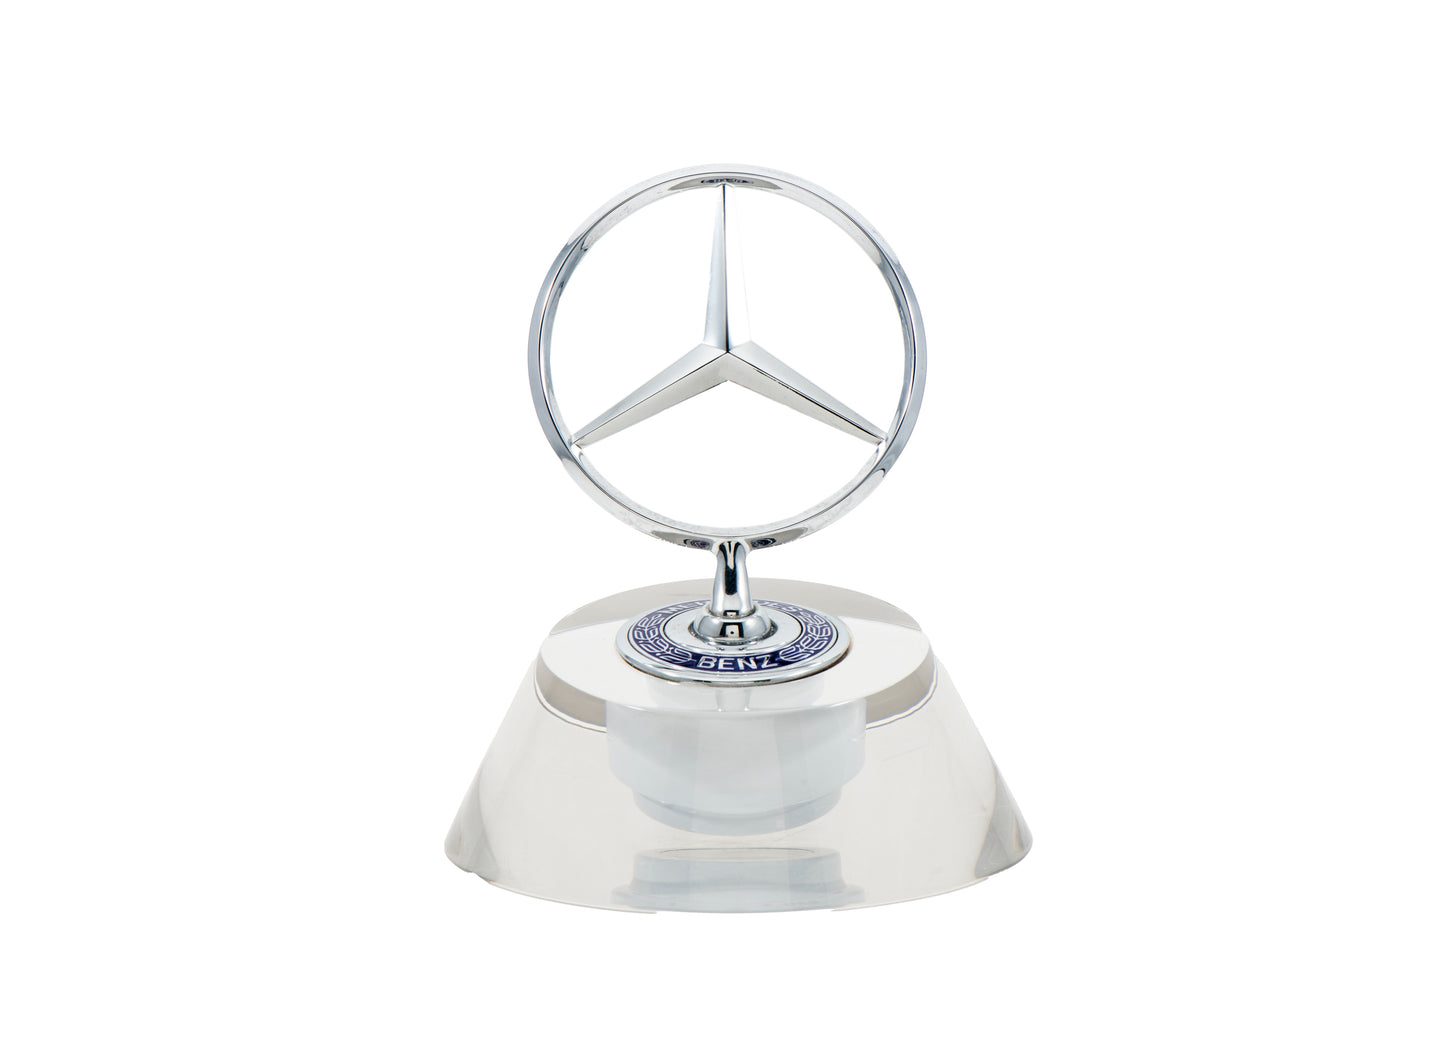 Mercedes Benz Hood Ornament Paperweight